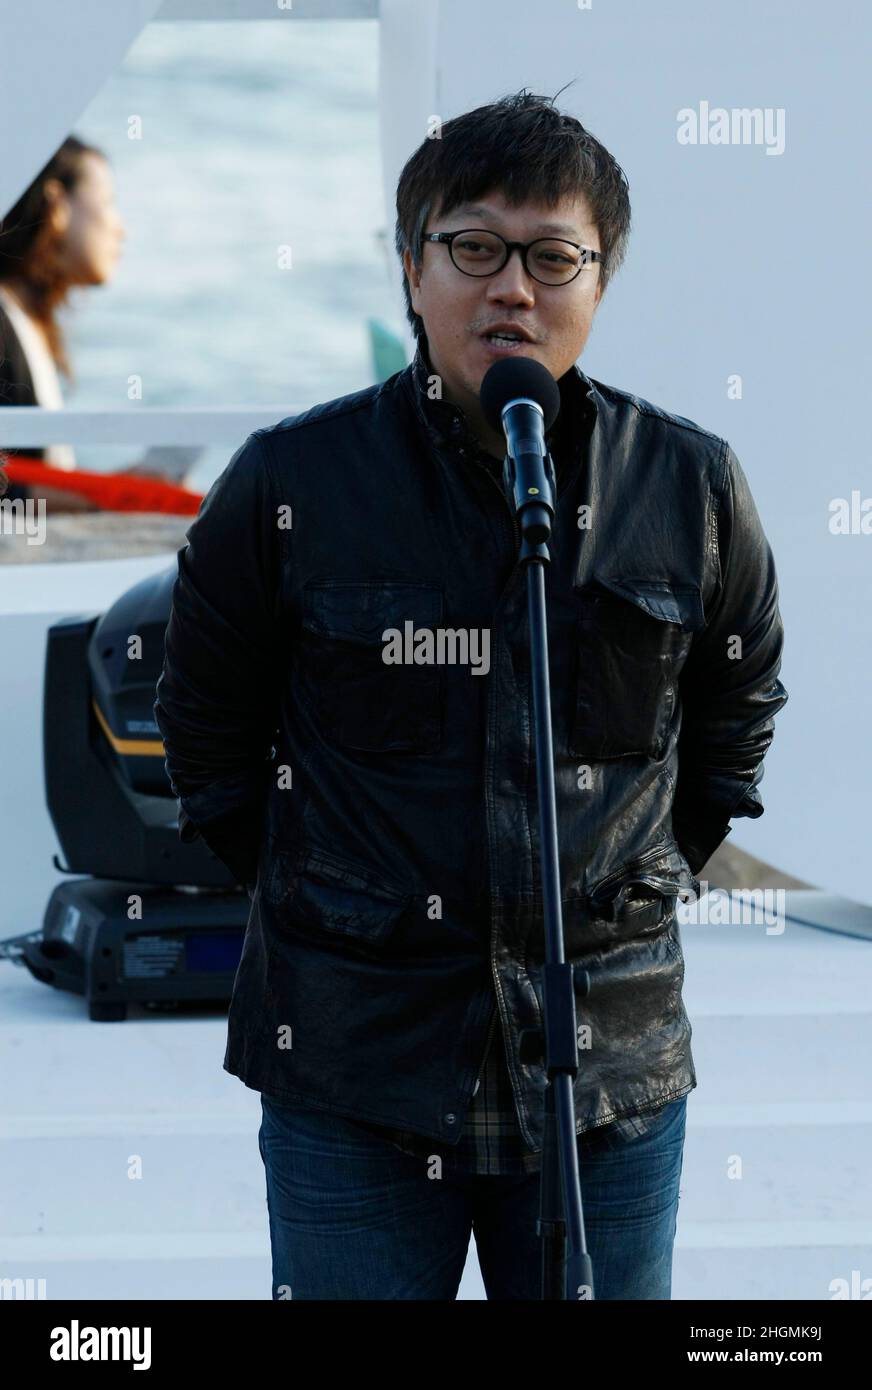 7 de octubre de 2012 - Busan, Corea del Sur : El Director Choi Dong Hun asiste a su película 'The Tieves' Open Stage durante el Festival Internacional de Cine de Busan 17th Open Talk en la aldea de Biff en la costa marítima de Haeundae. (Ryu Seung-il / Polaris) Foto de stock